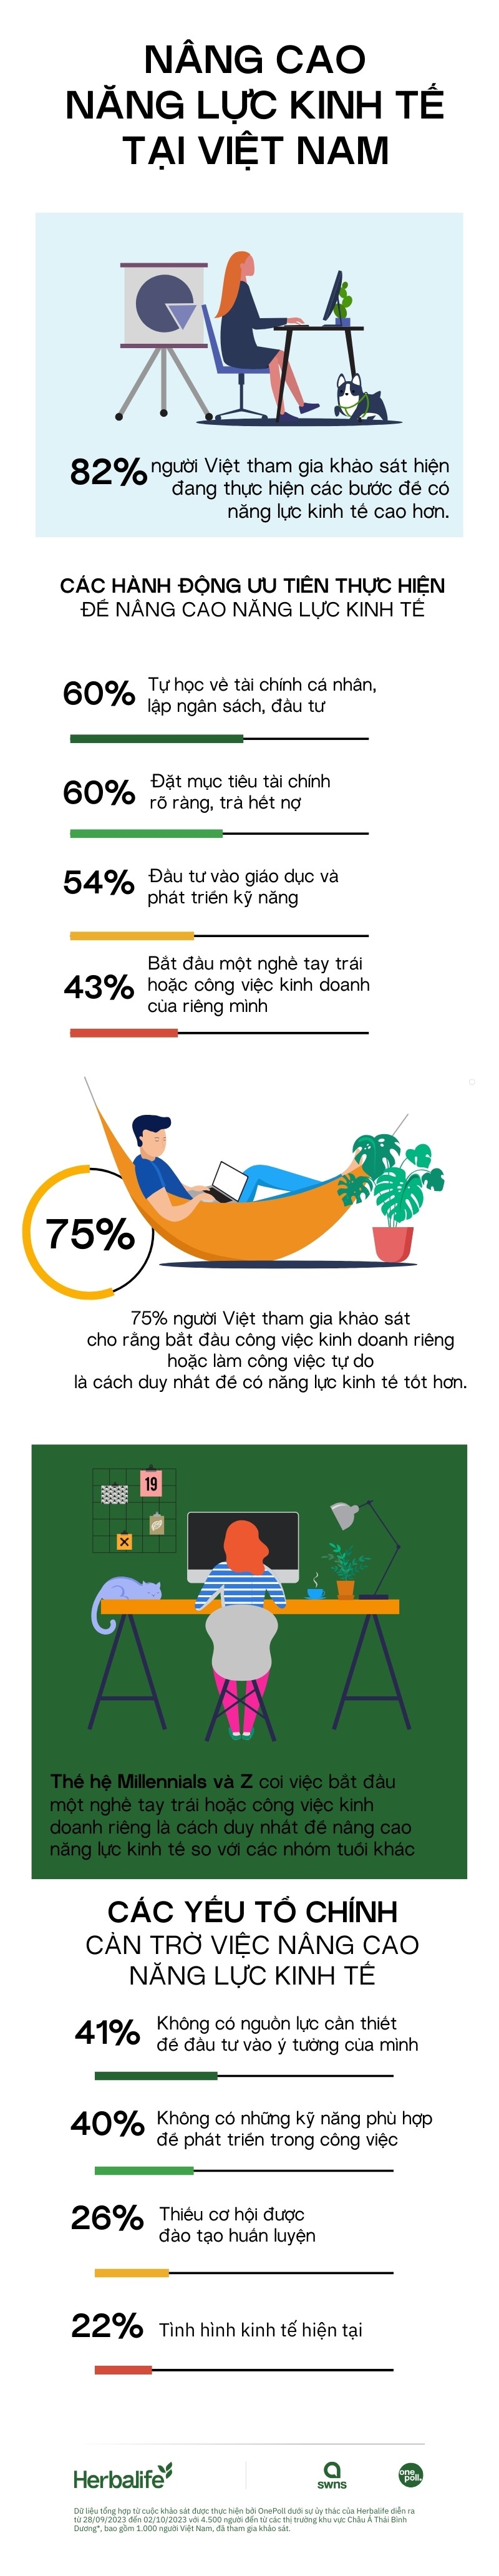 Nâng cao năng lực kinh tế là mong muốn của hầu hết người Việt Nam hiện nay